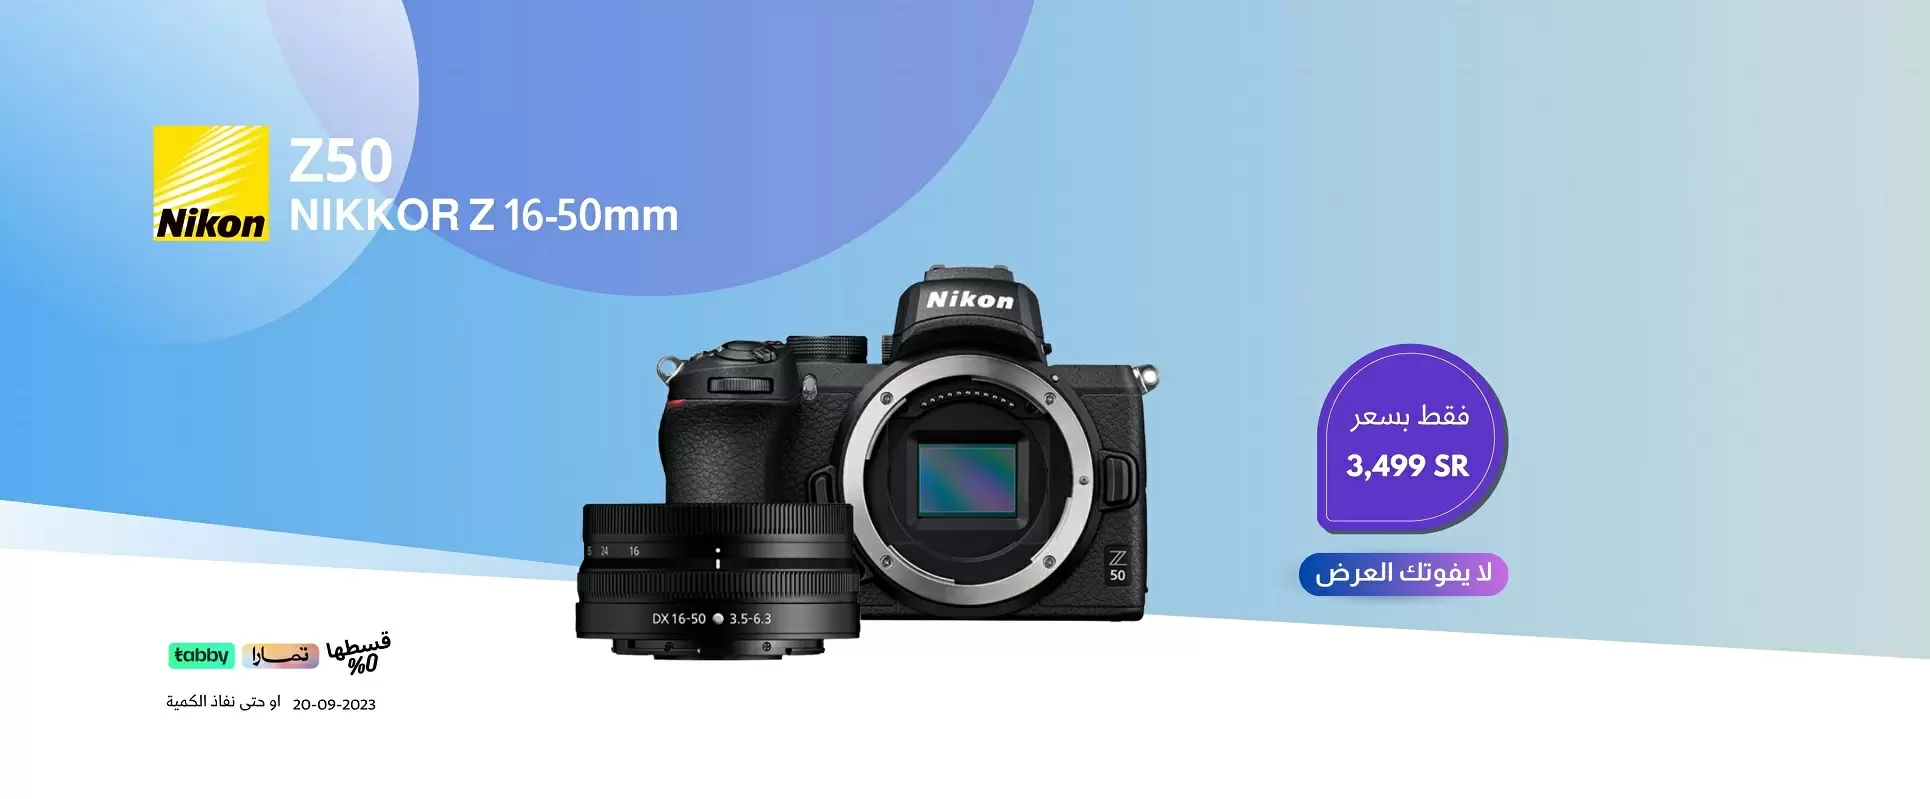 Nikon Z50 offer 